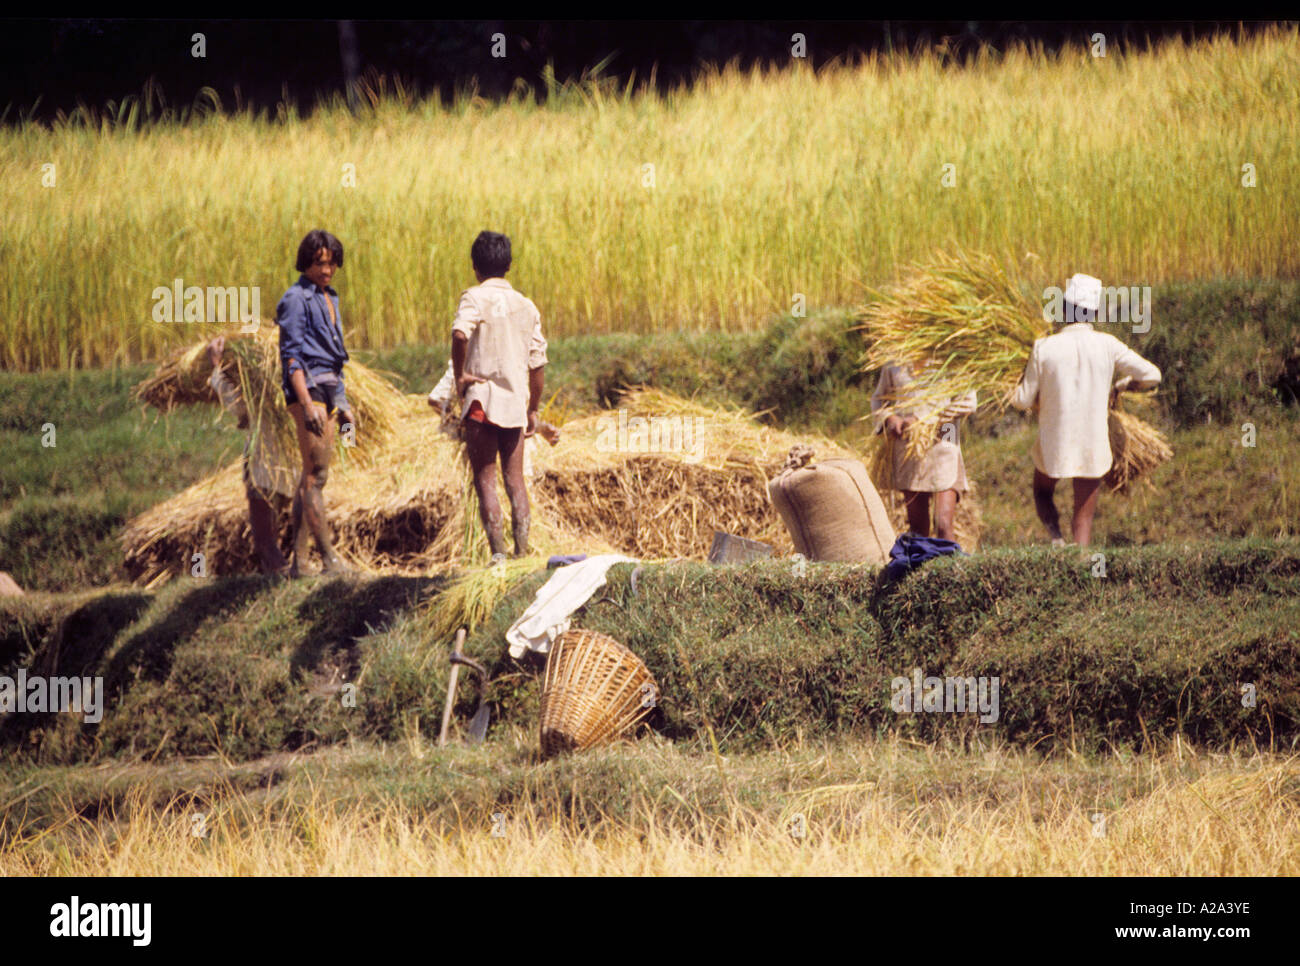 Männer junge Feld Nepal Asien offen ungestellte winnowing Reiskorn auf Matte Ernte Landwirtschaft ländliche Porträt Arbeitskorb Stockfoto